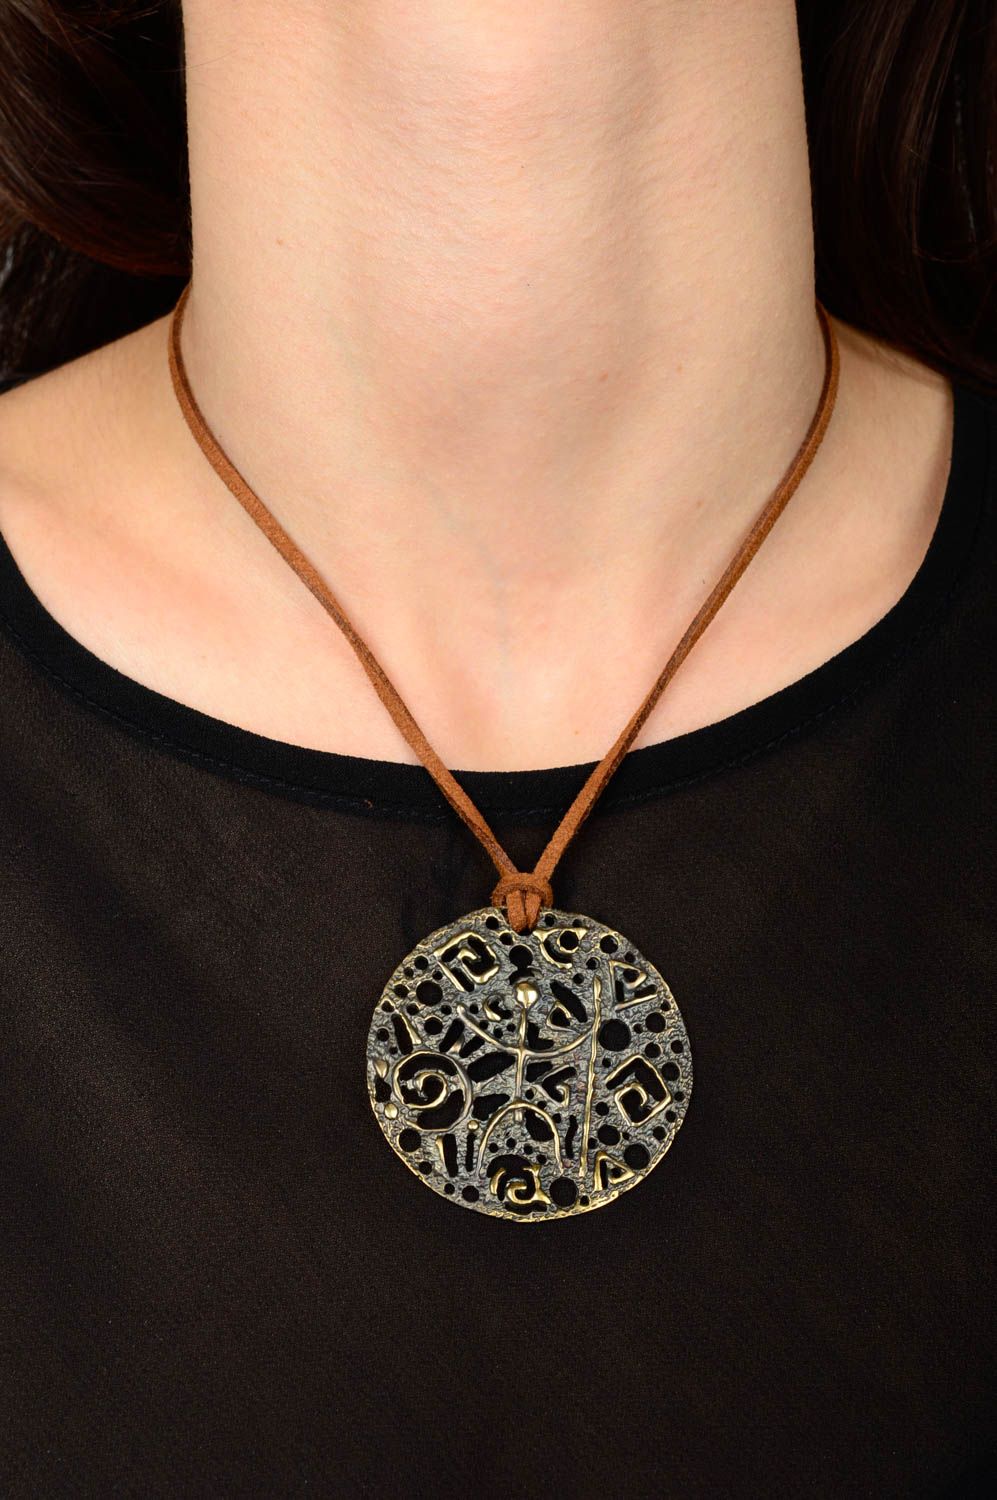 Handmsde copper pendant copper jewelry metal pendant fashion accessories photo 2